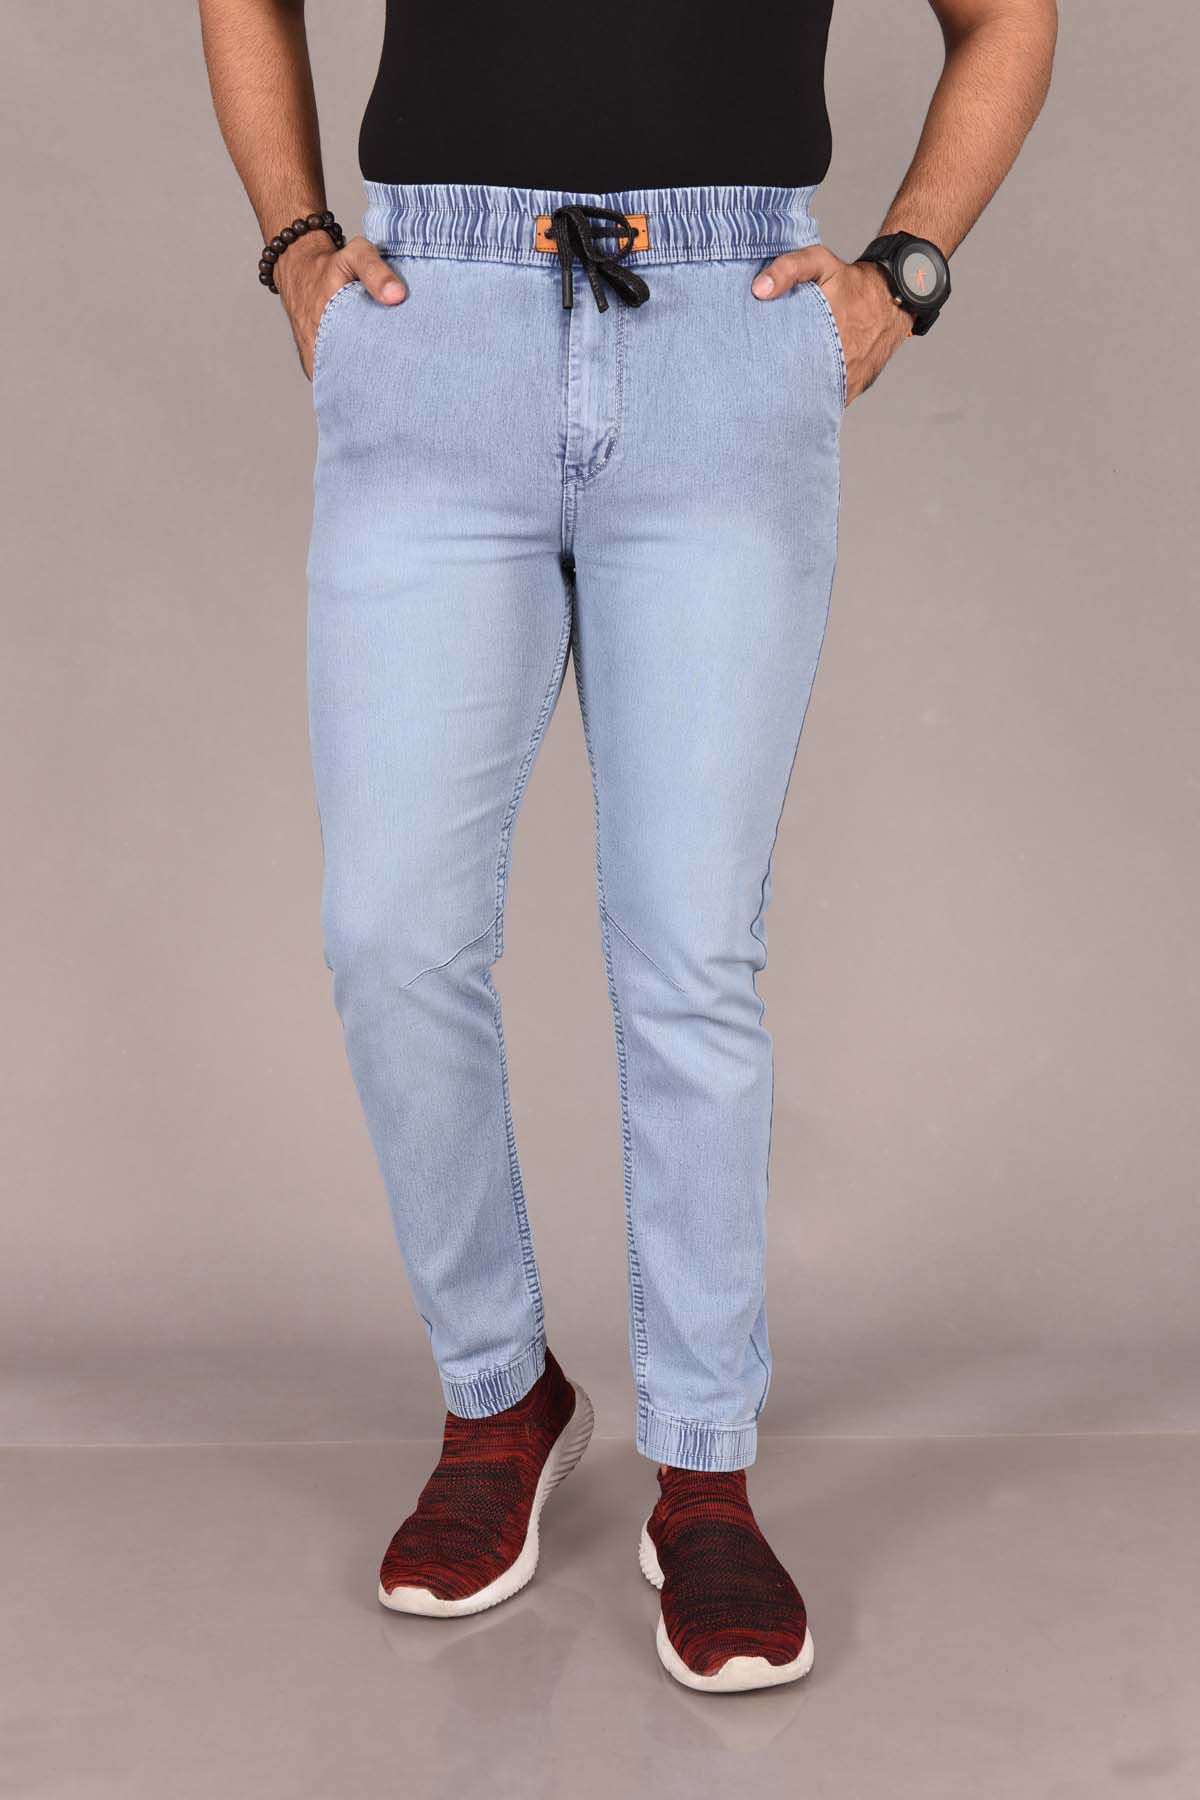     			Aflash Slim Fit Jogger Men's Jeans - Light Blue ( Pack of 1 )